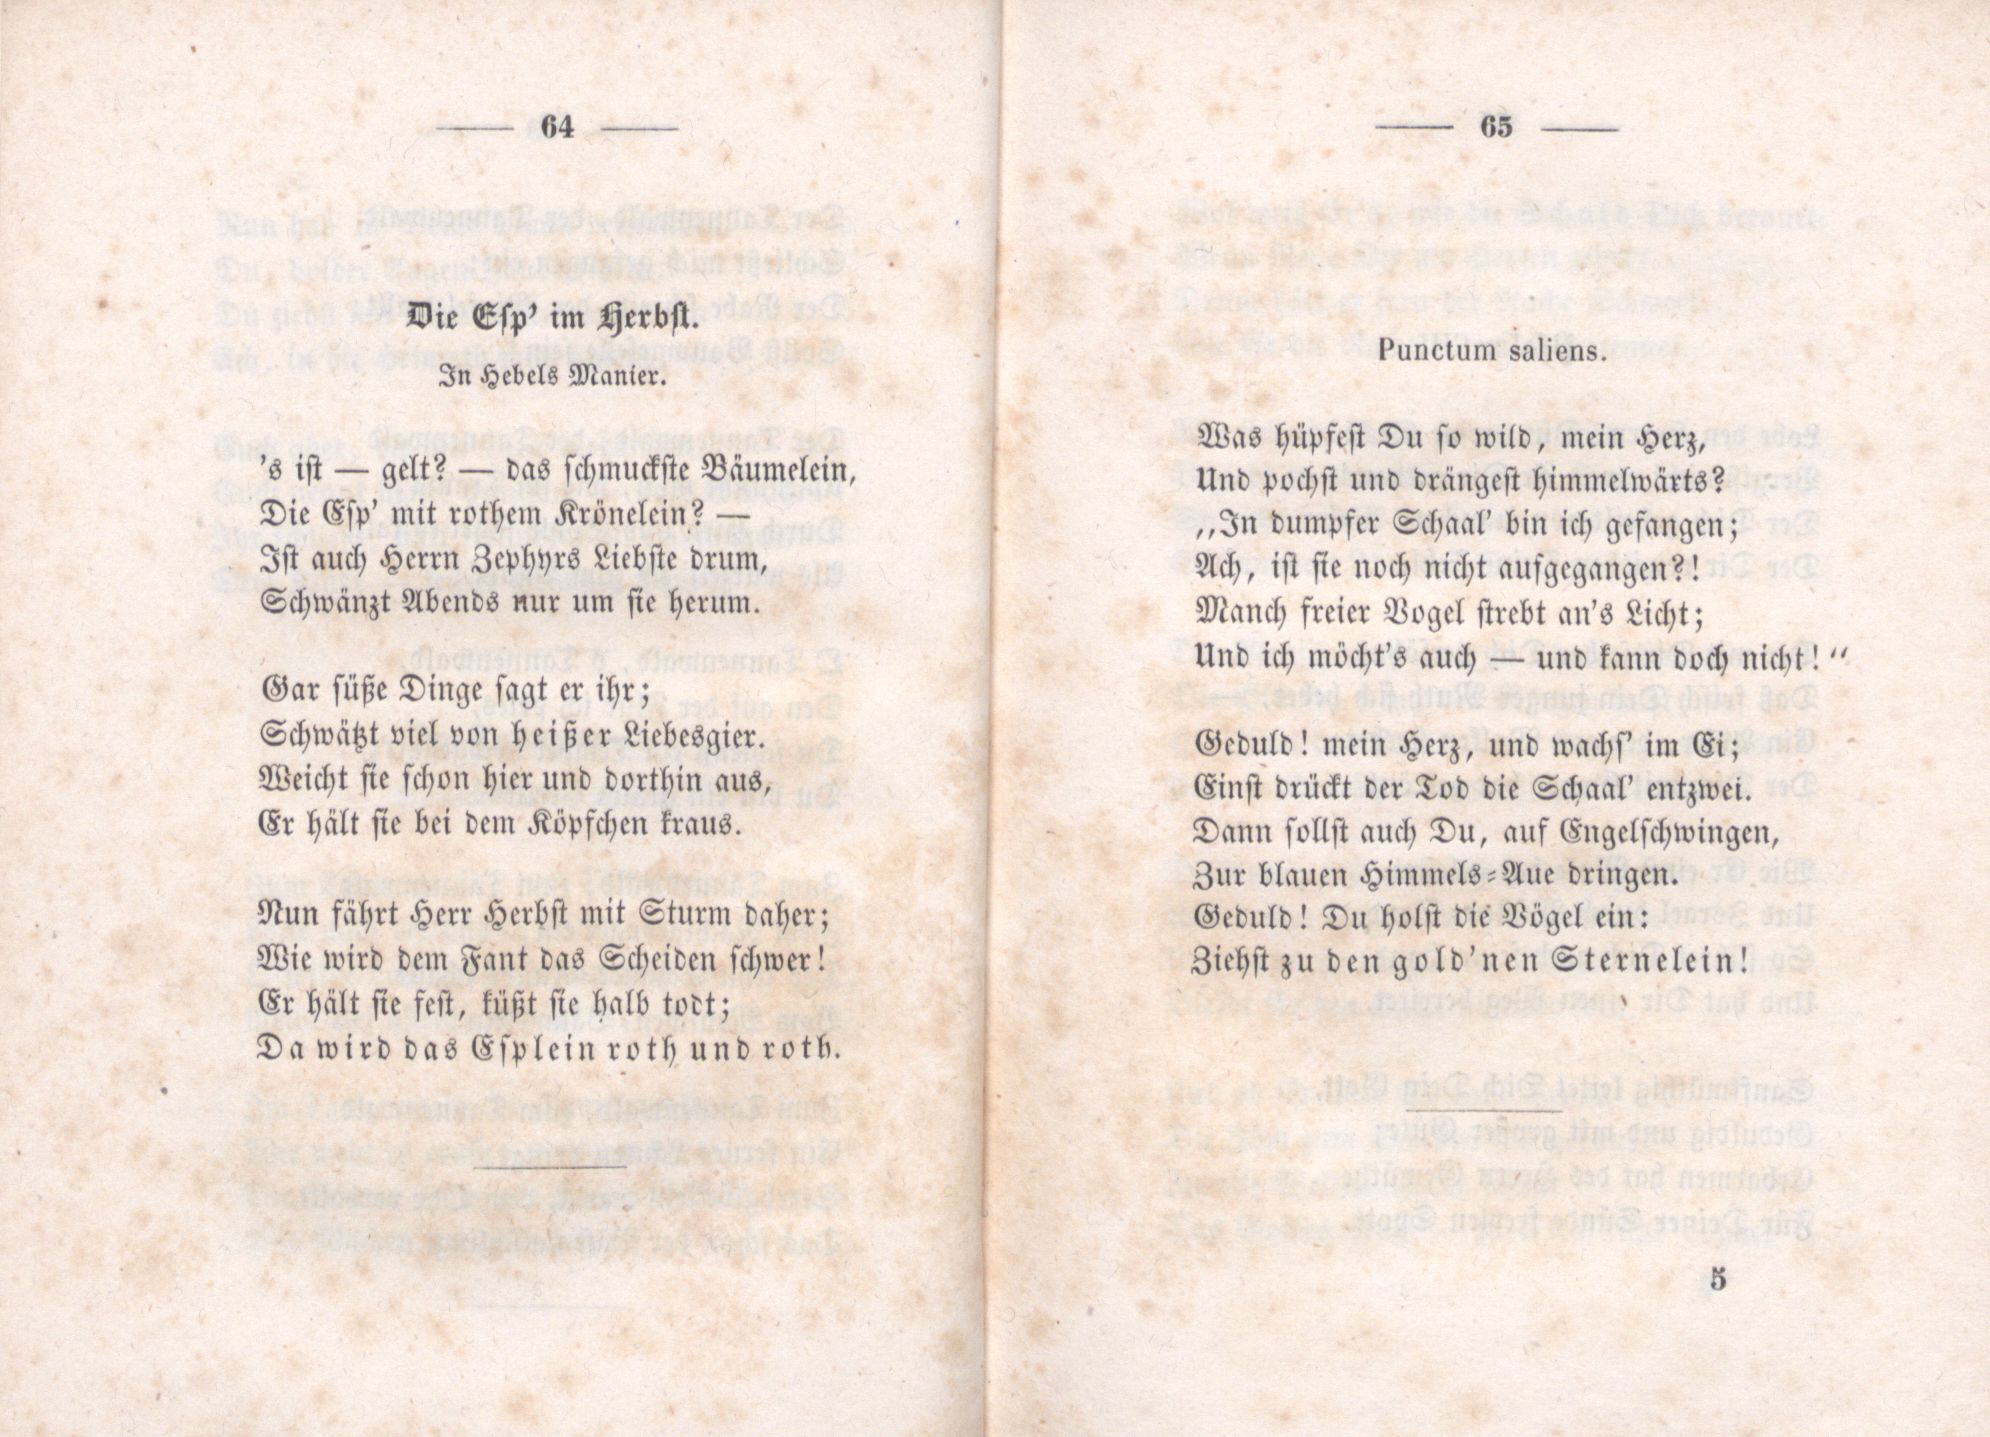 Die Esp' im Herbst (1851) | 1. (64-65) Main body of text